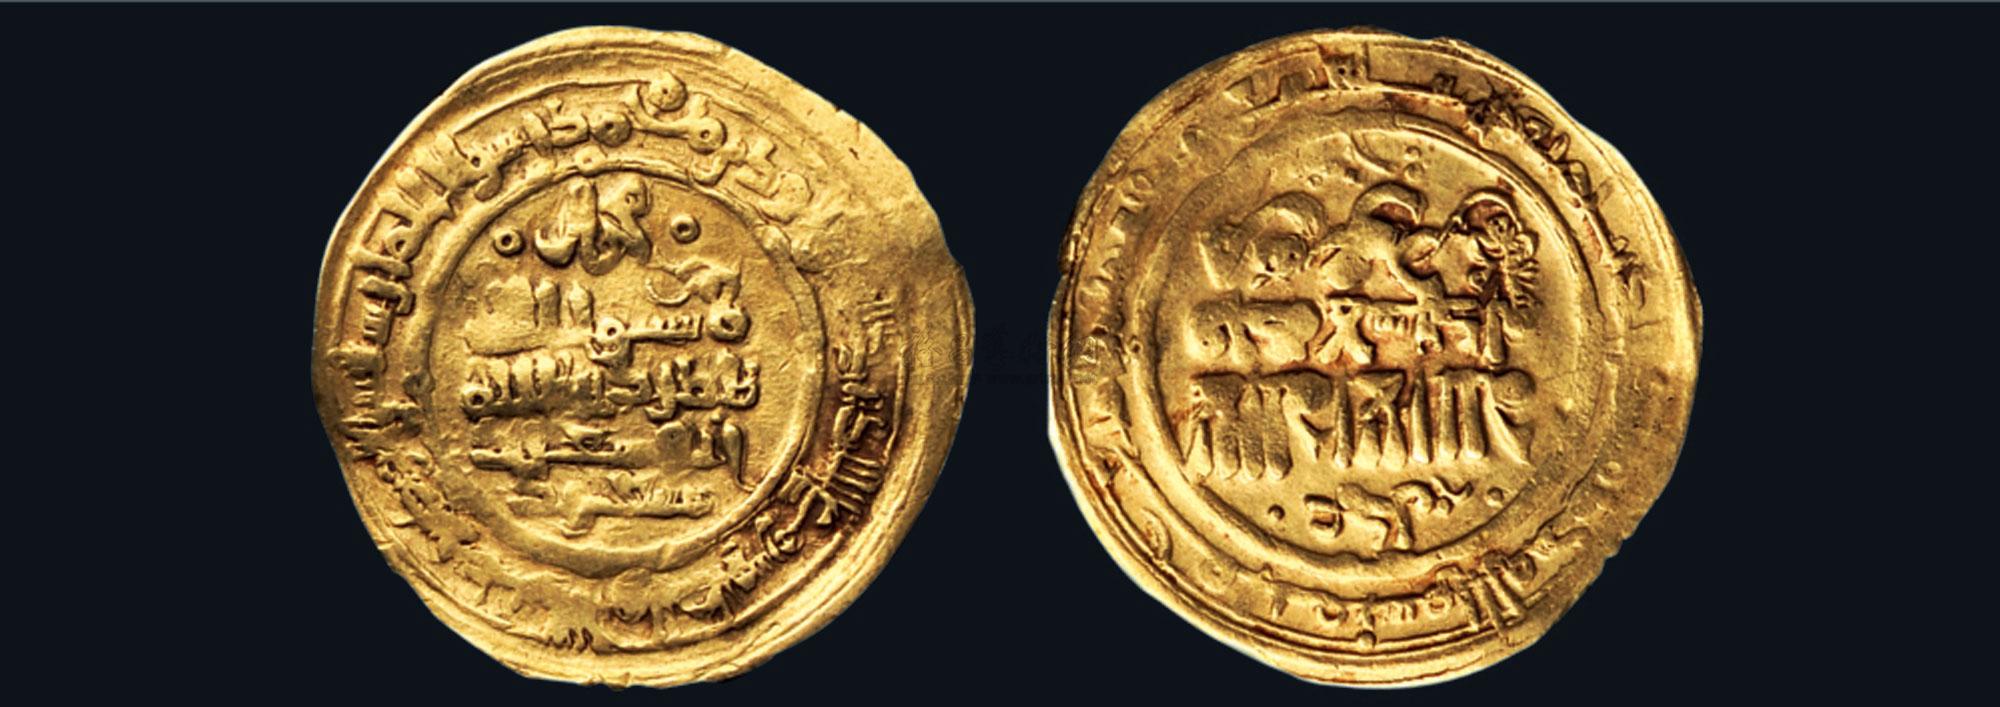 1415古代丝绸之路花萨曼金币